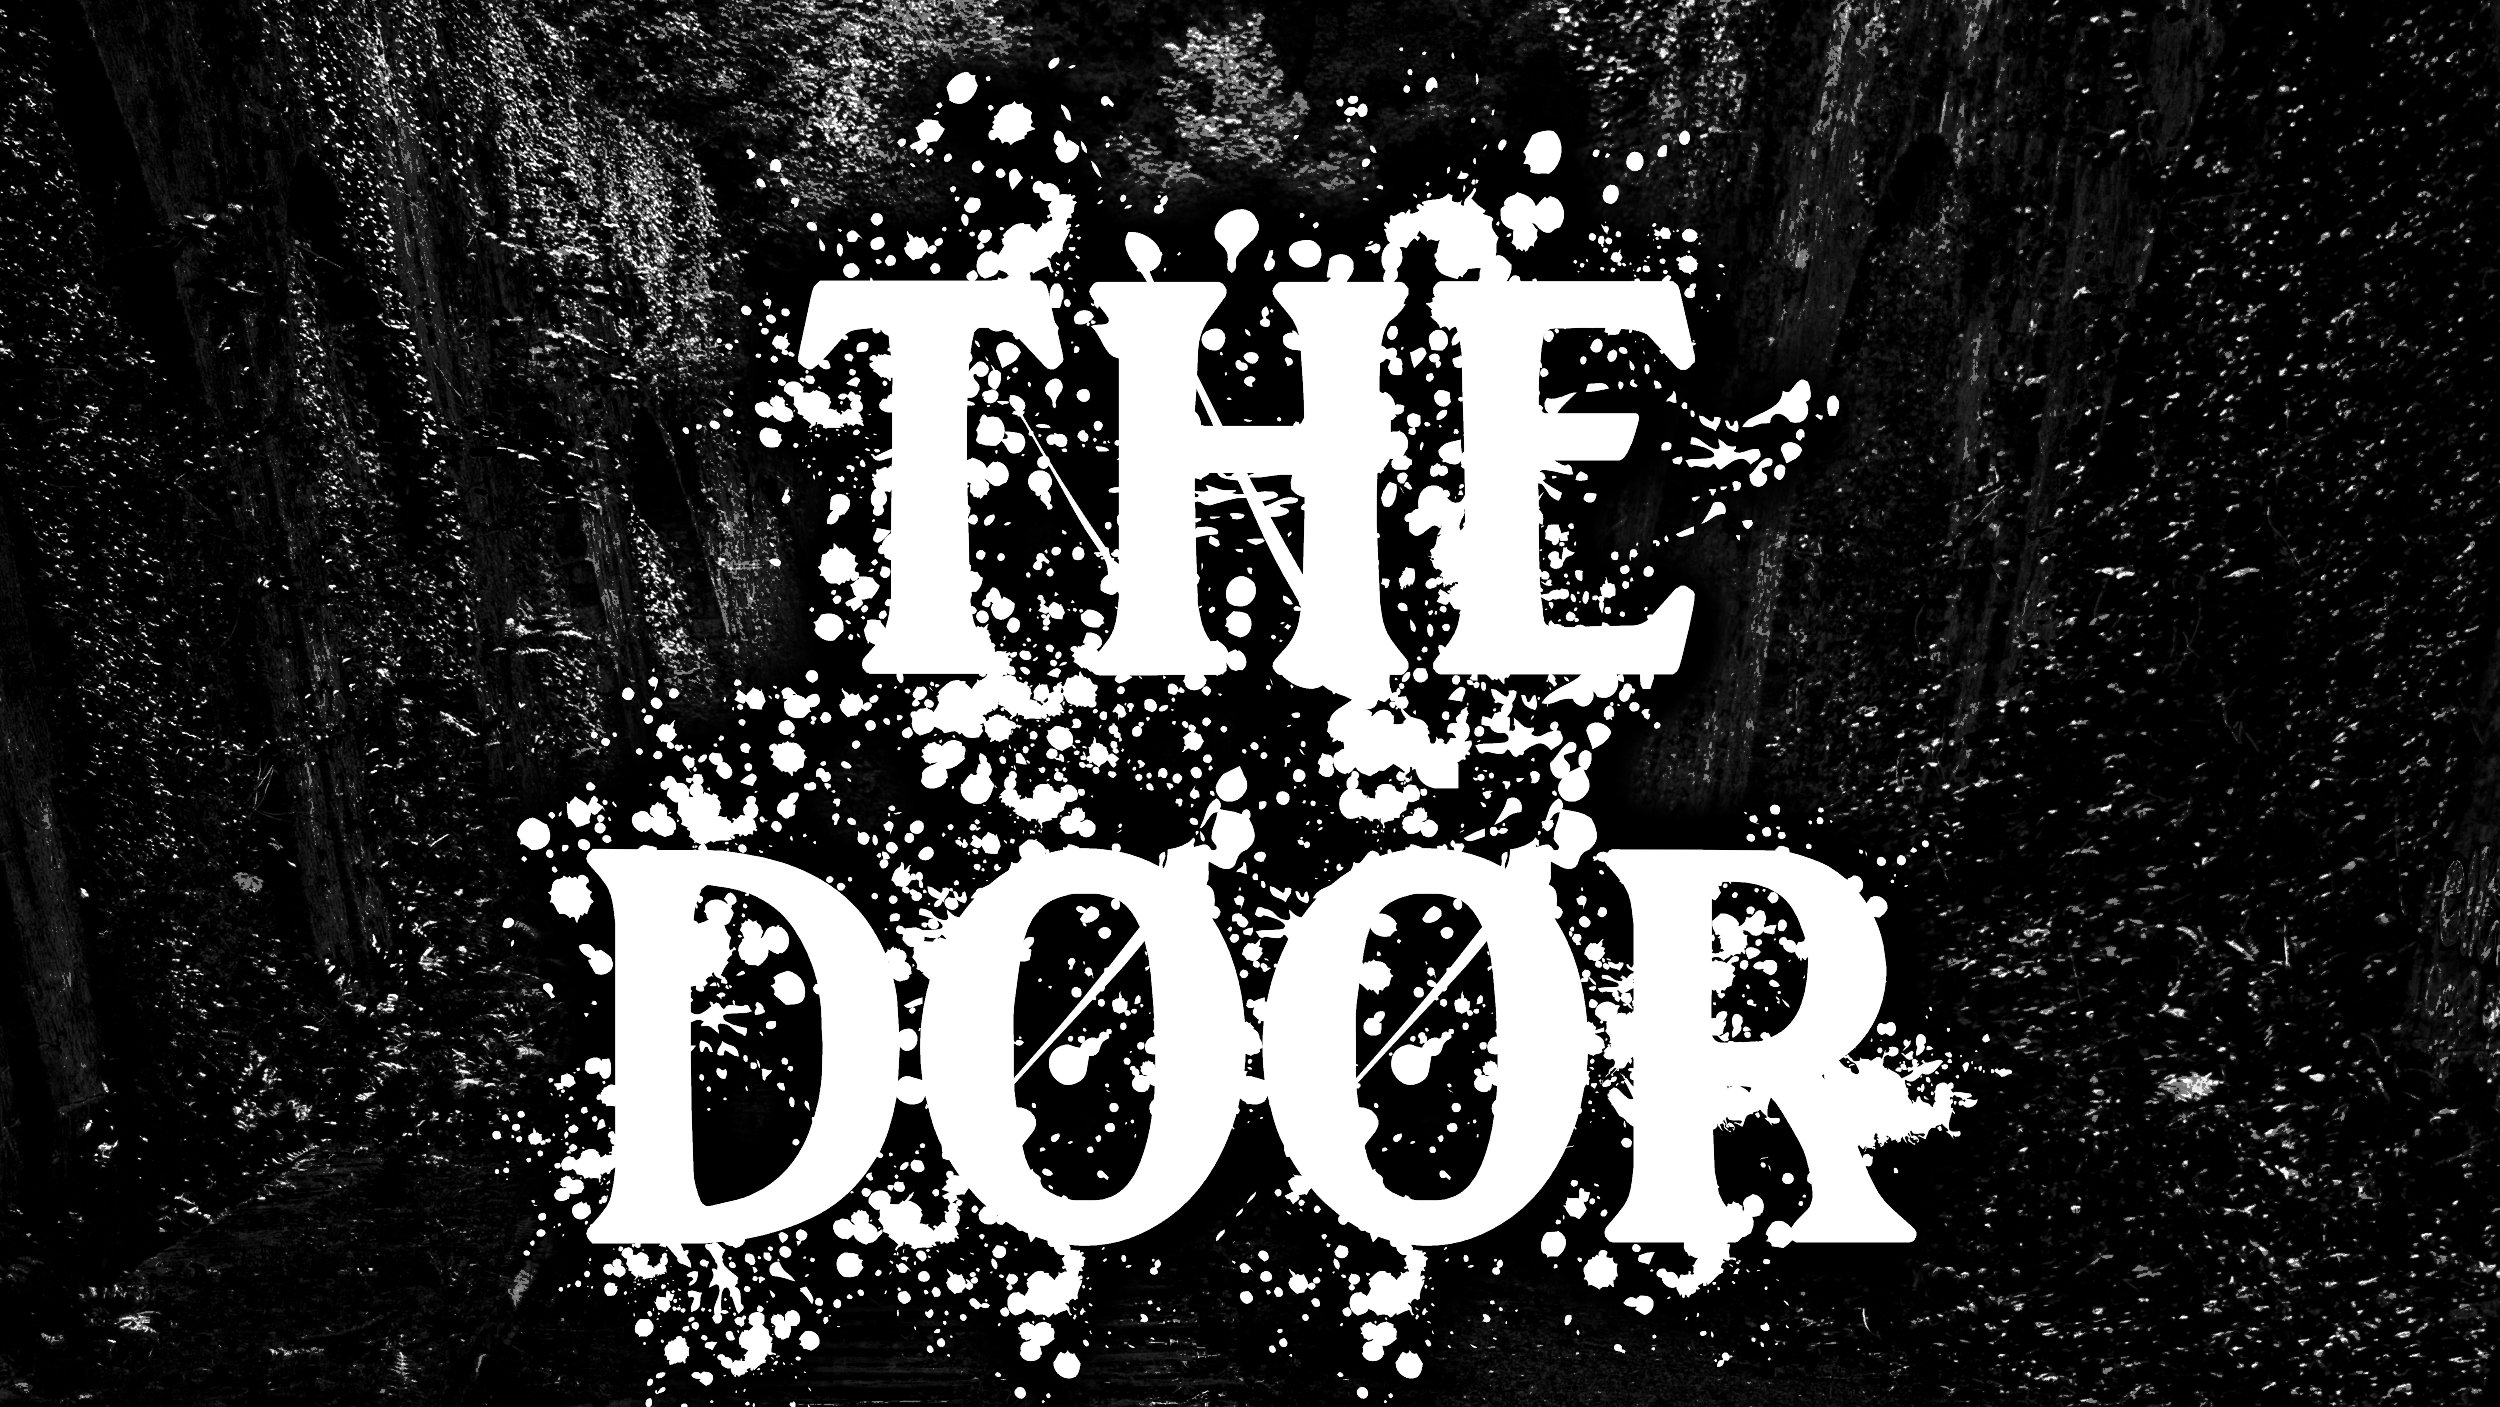 THE DOOR